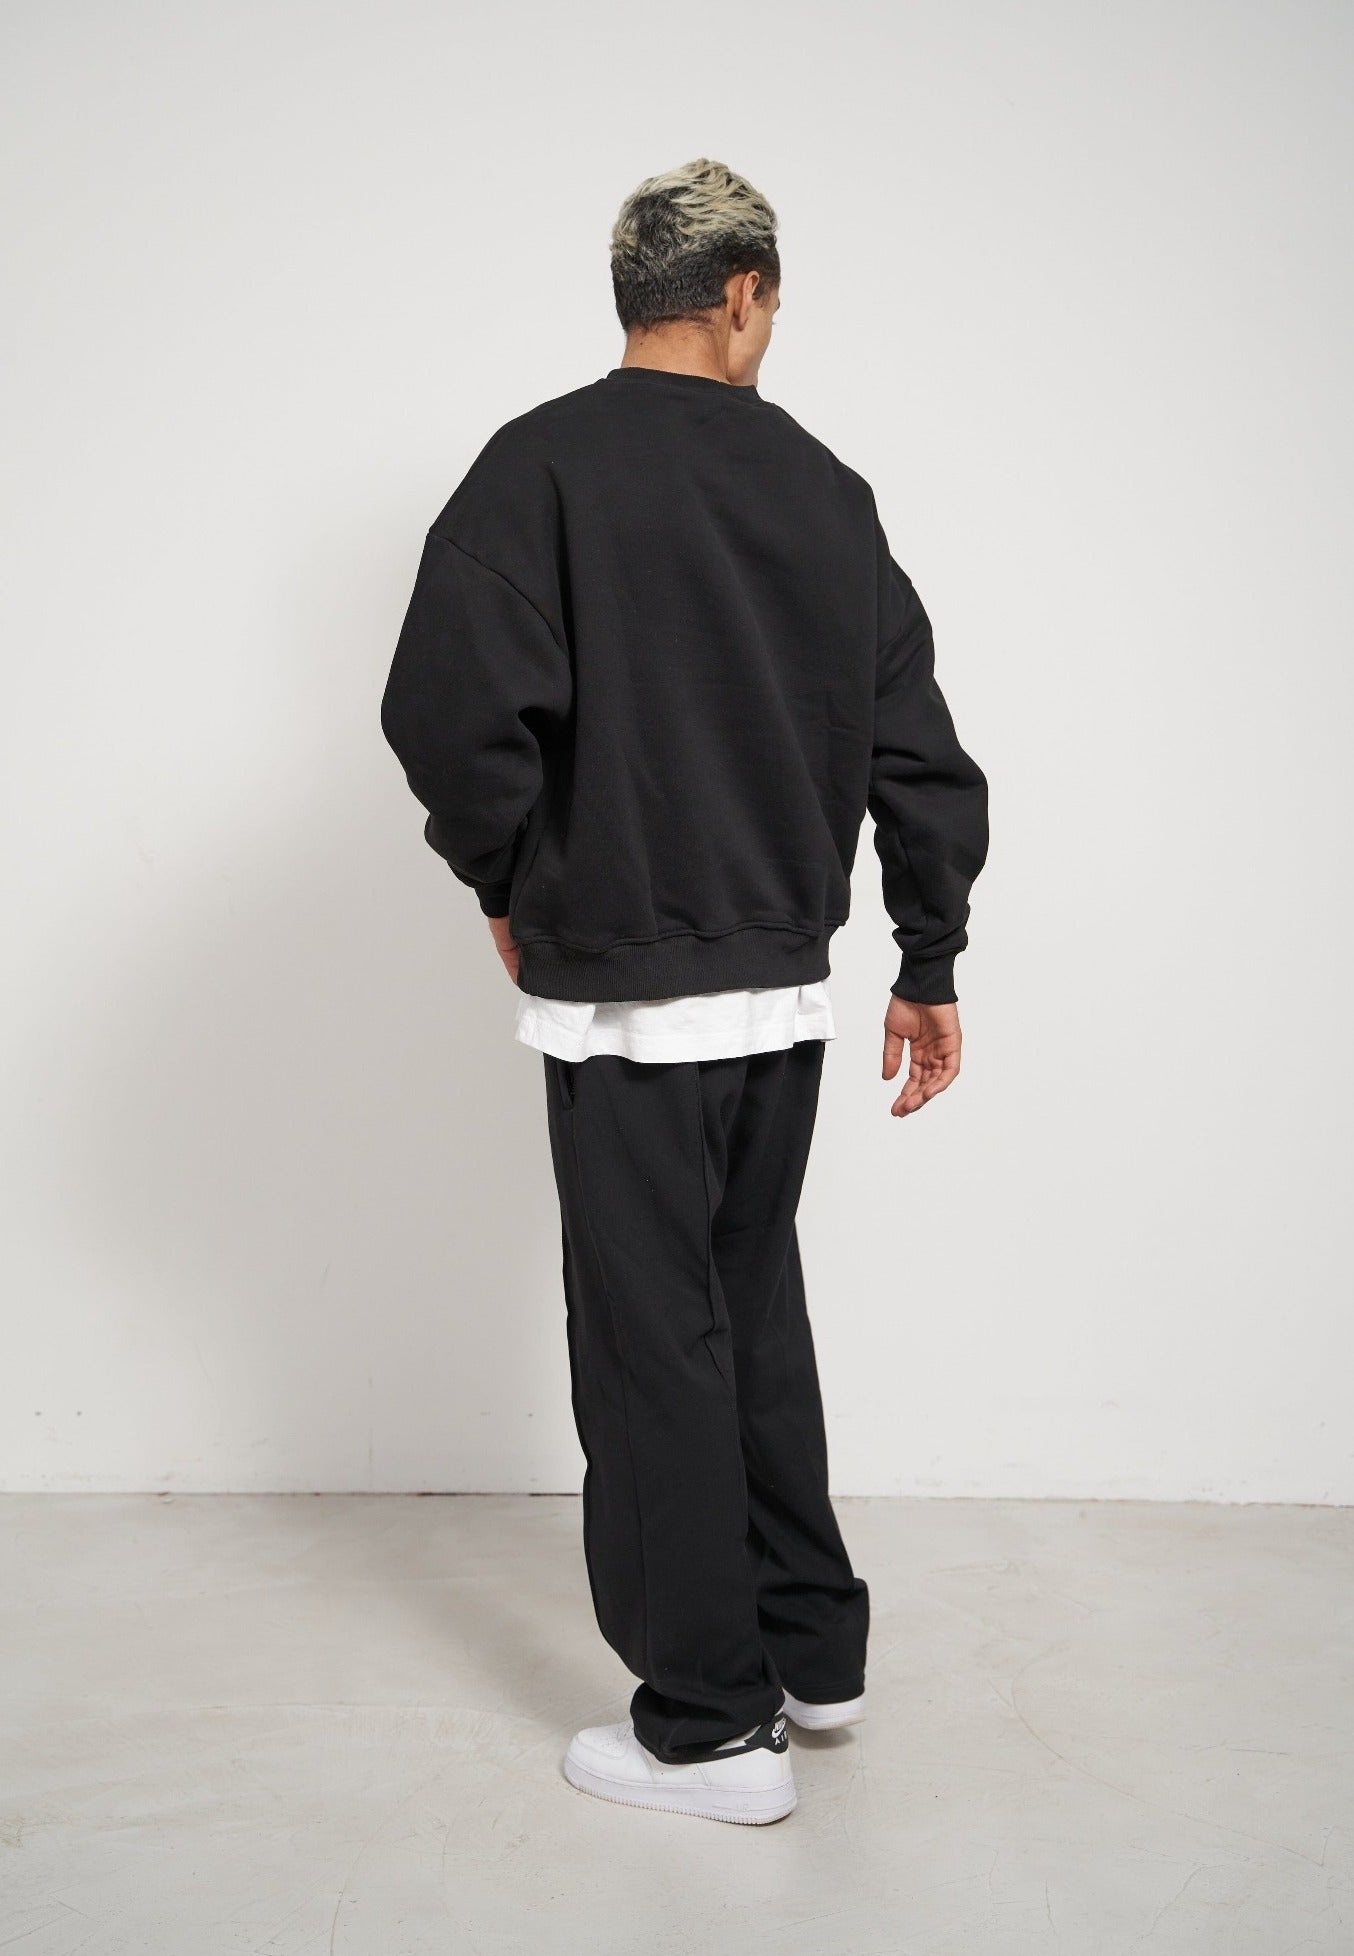 Schwarzer oversize Sweater für Männer. Schwarzer Basic Sweater für Herren